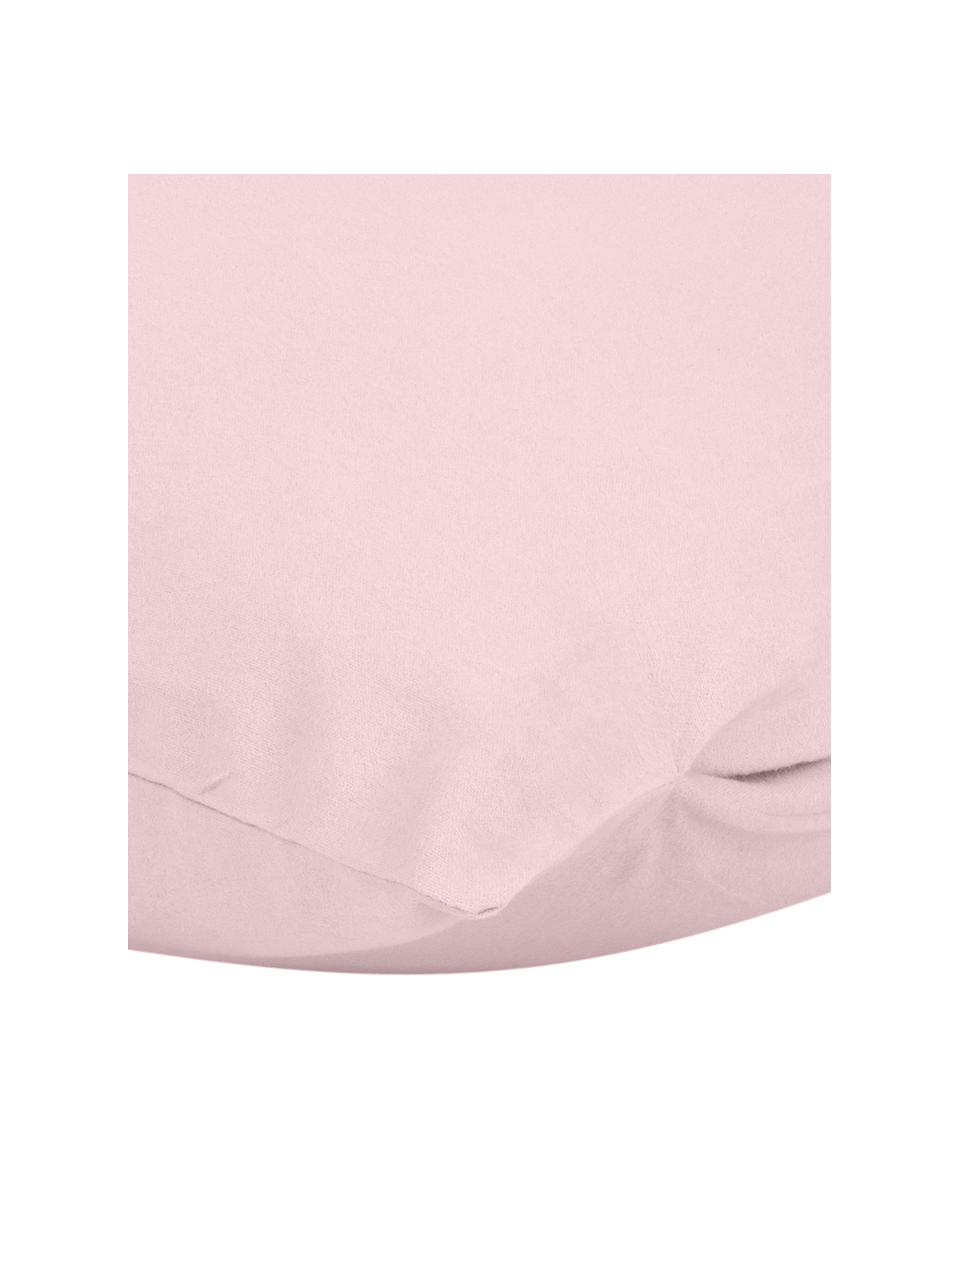 Poszewka na poduszkę z flaneli Biba, 2 szt., Blady różowy, S 40 x D 80 cm